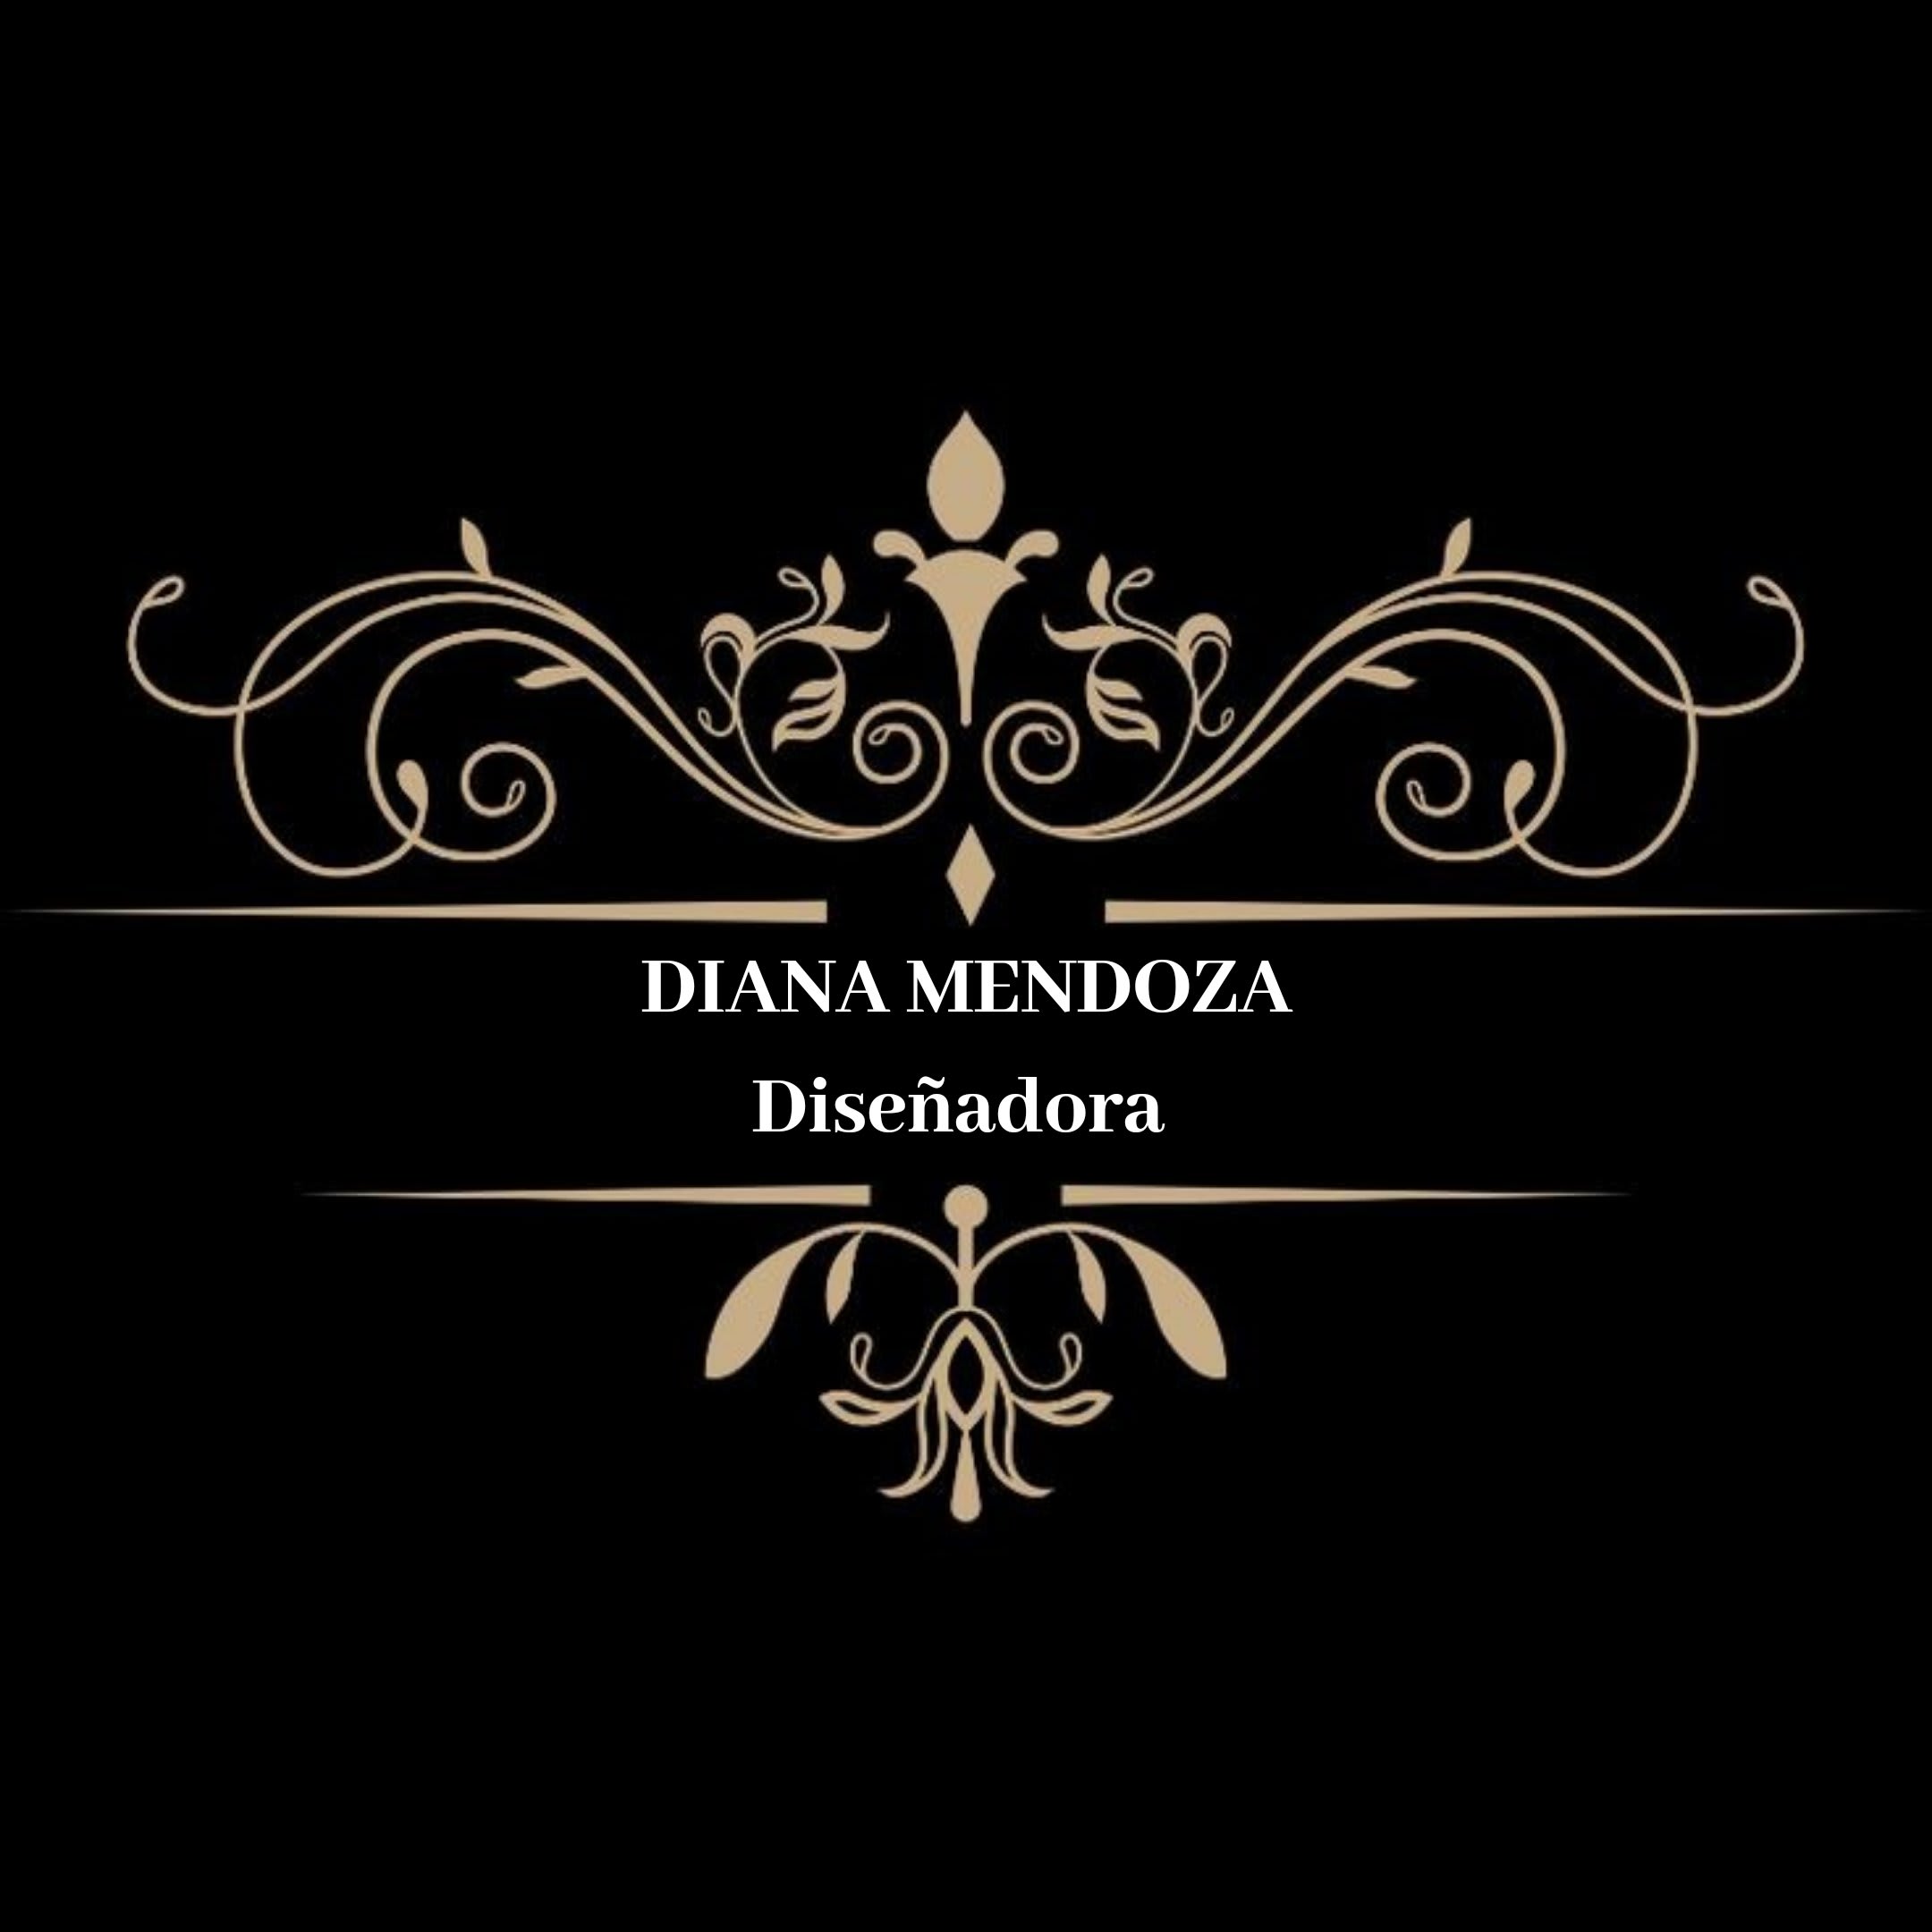 Diana Mendoza Diseñadora